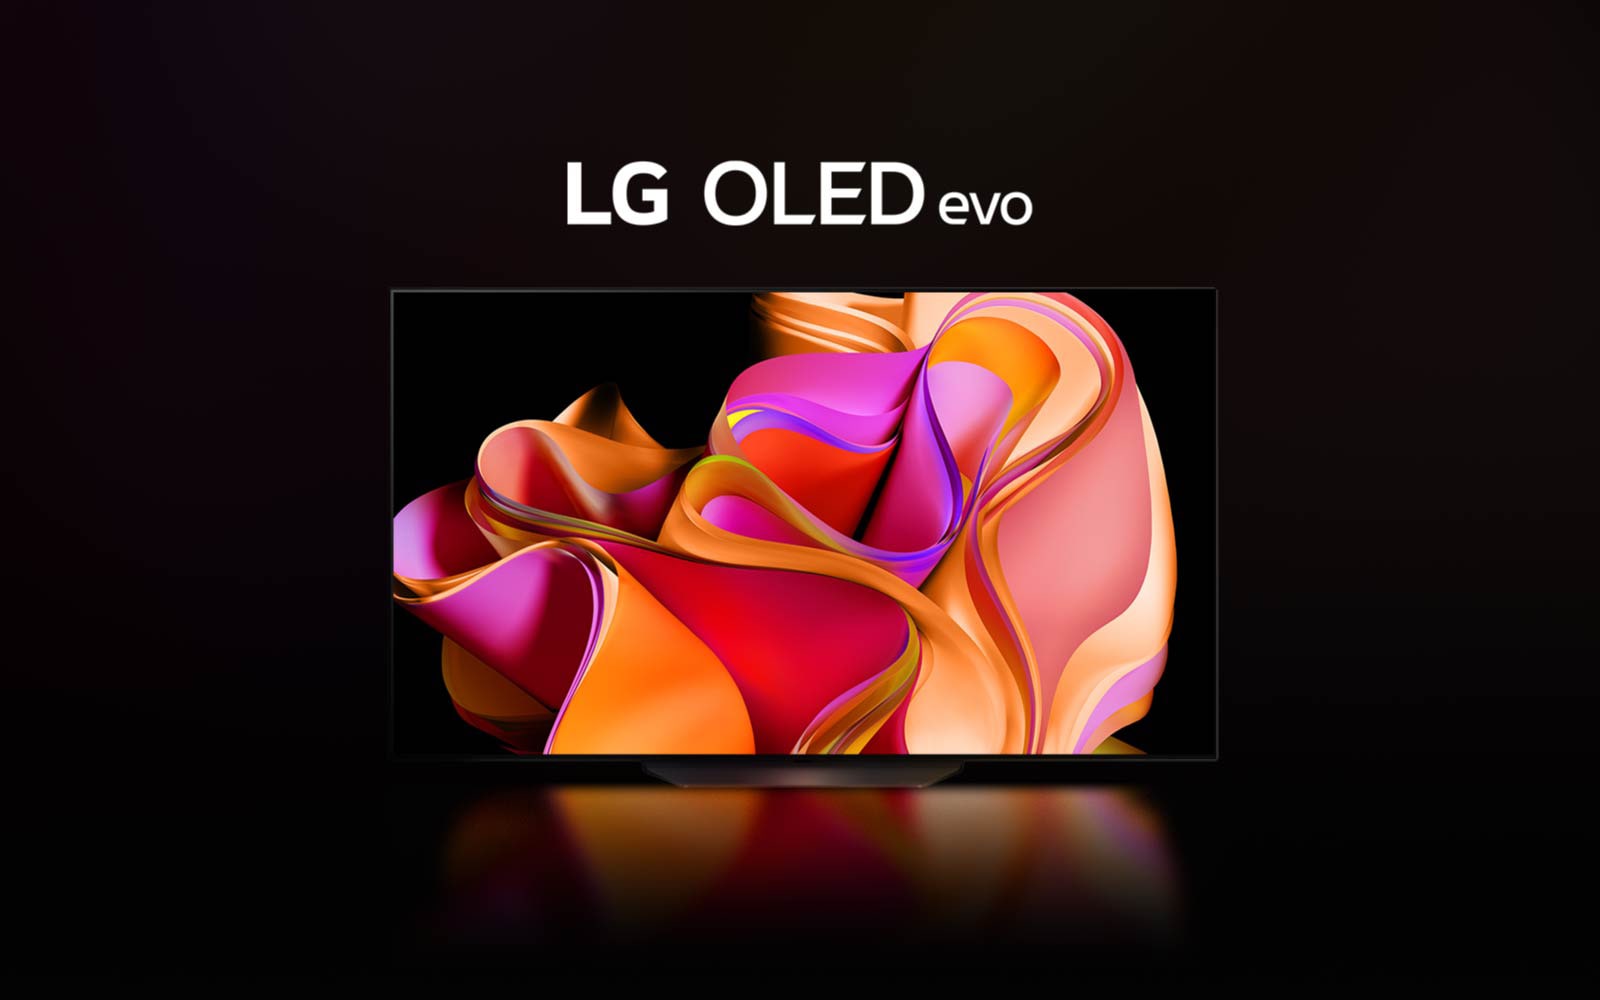 Une vidéo montre LG OLED CS3 apparaissant progressivement sur un fond noir.  Ensuite, le téléviseur s'agrandit avec une illustration abstraite colorée à l'écran et les mots "LG OLED evo" ci-dessus.